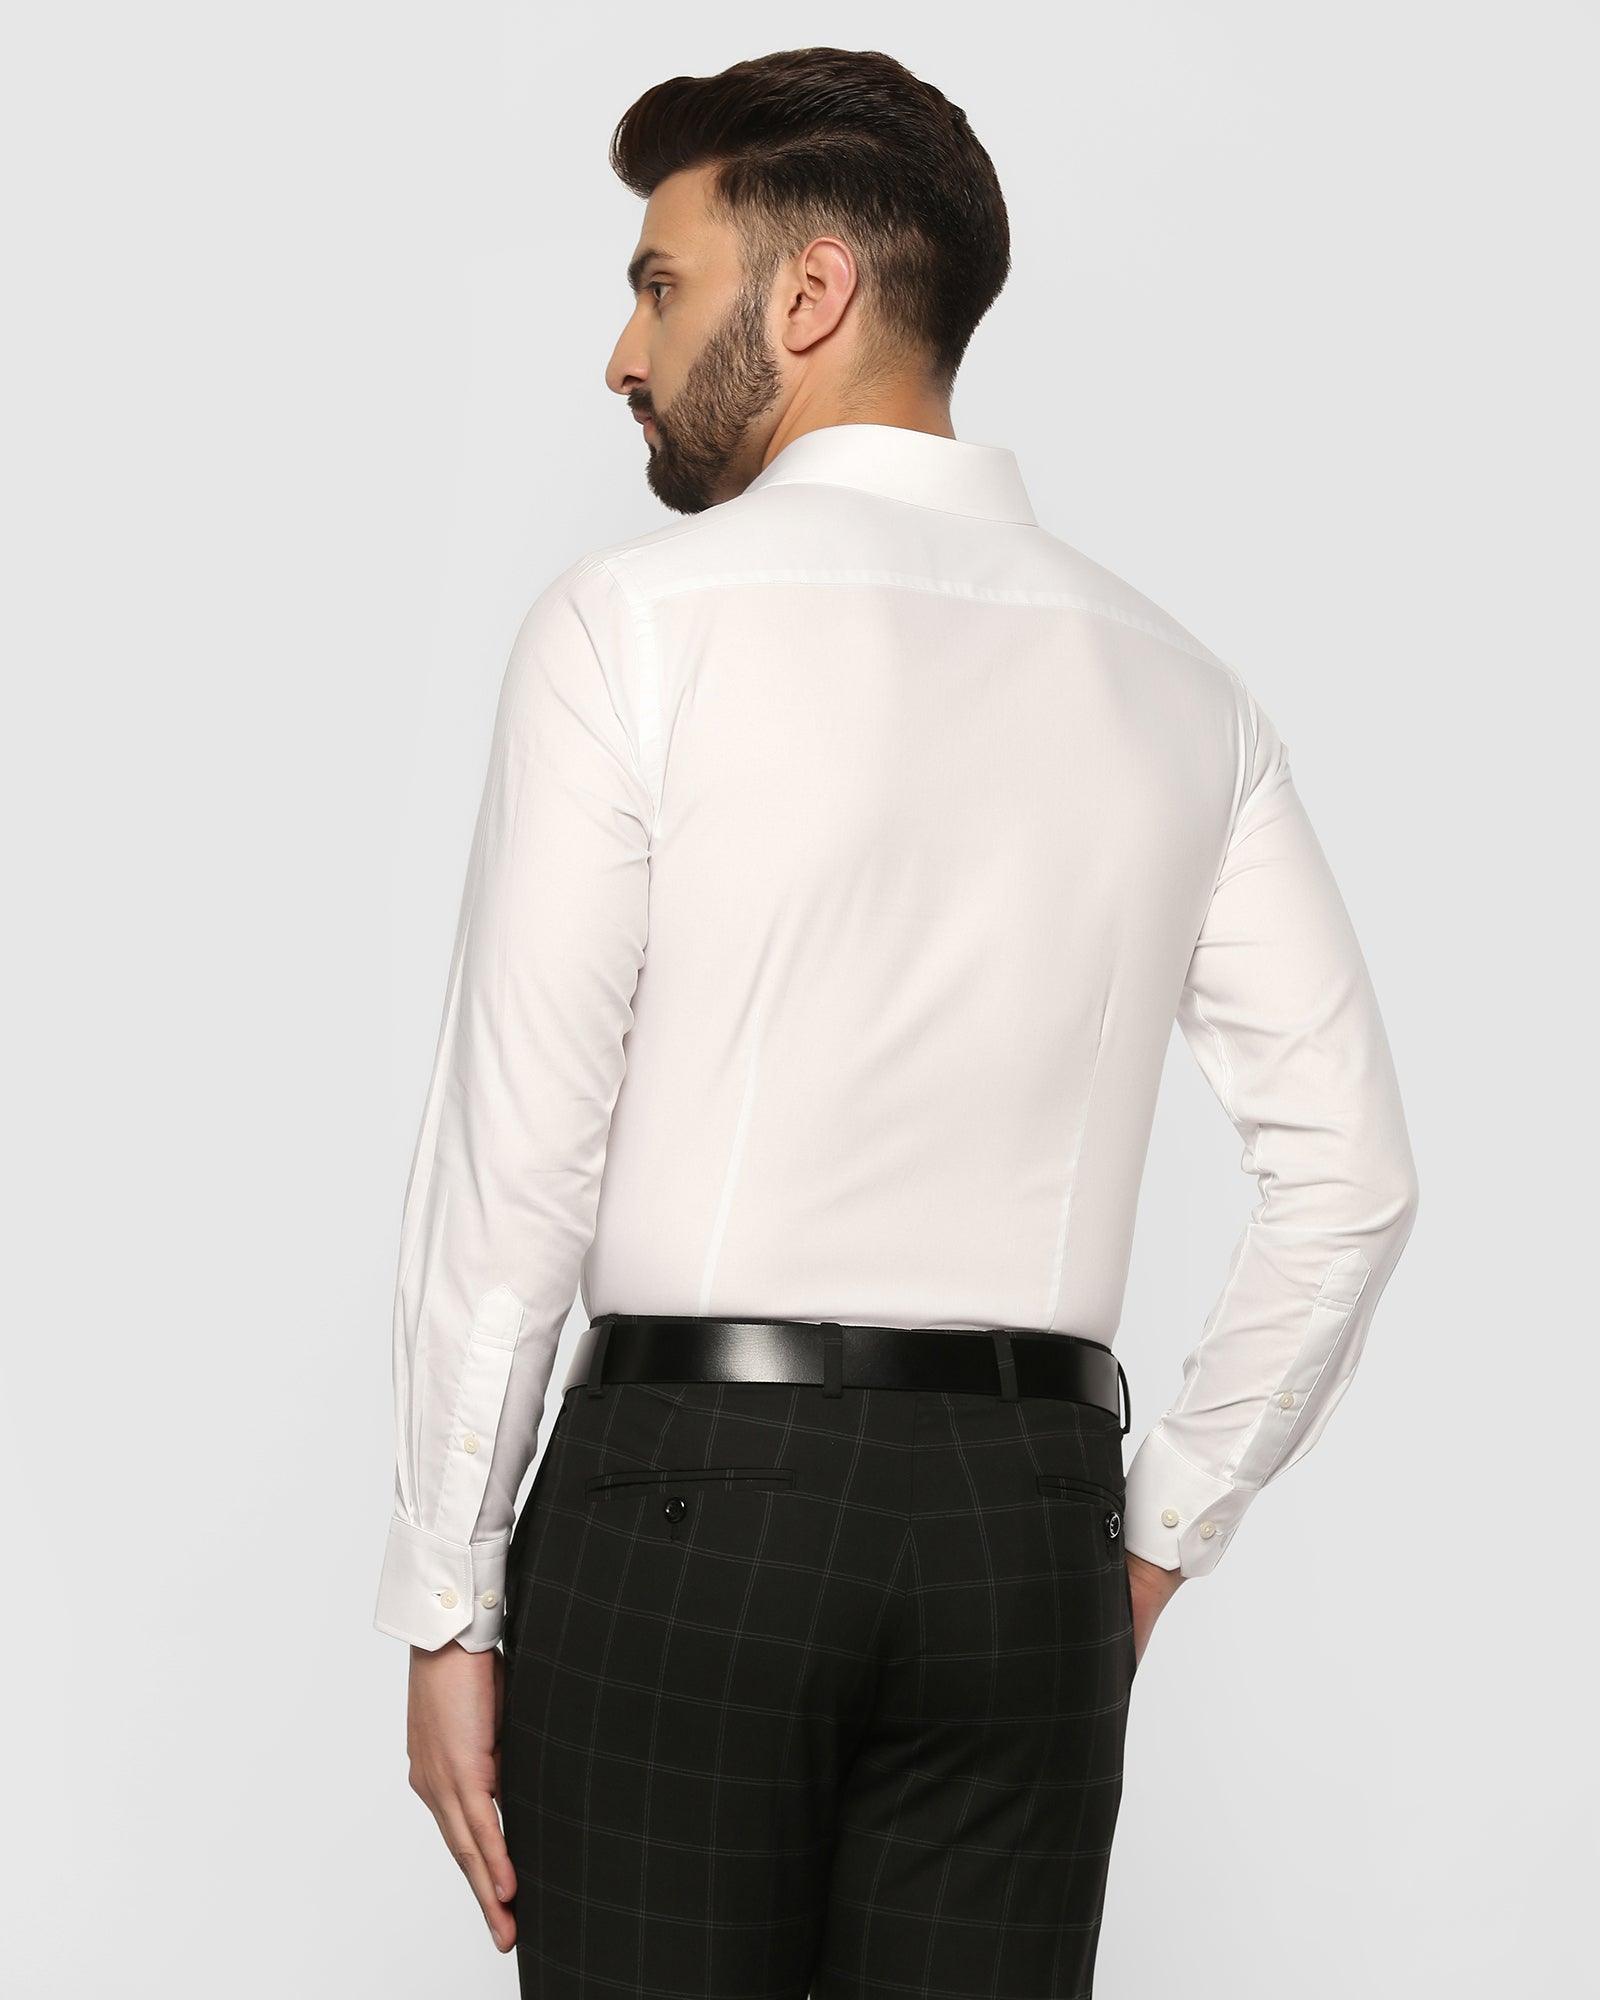 Formal White Solid Shirt - Retro